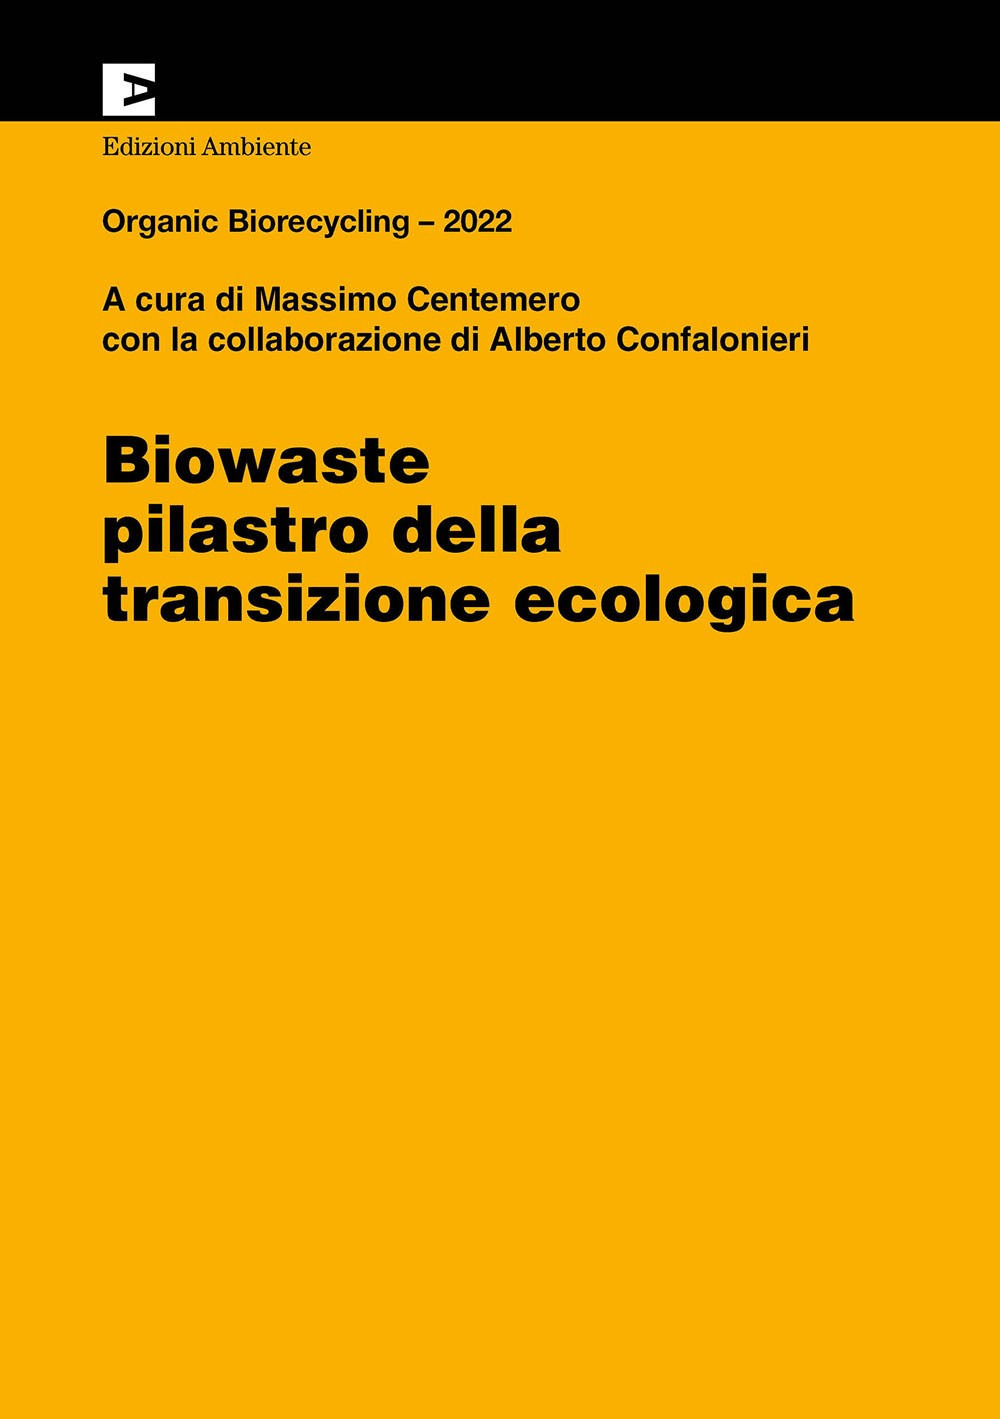 Biowaste. Pilastro della transizione ecologica. Organic Biorecycling 2022